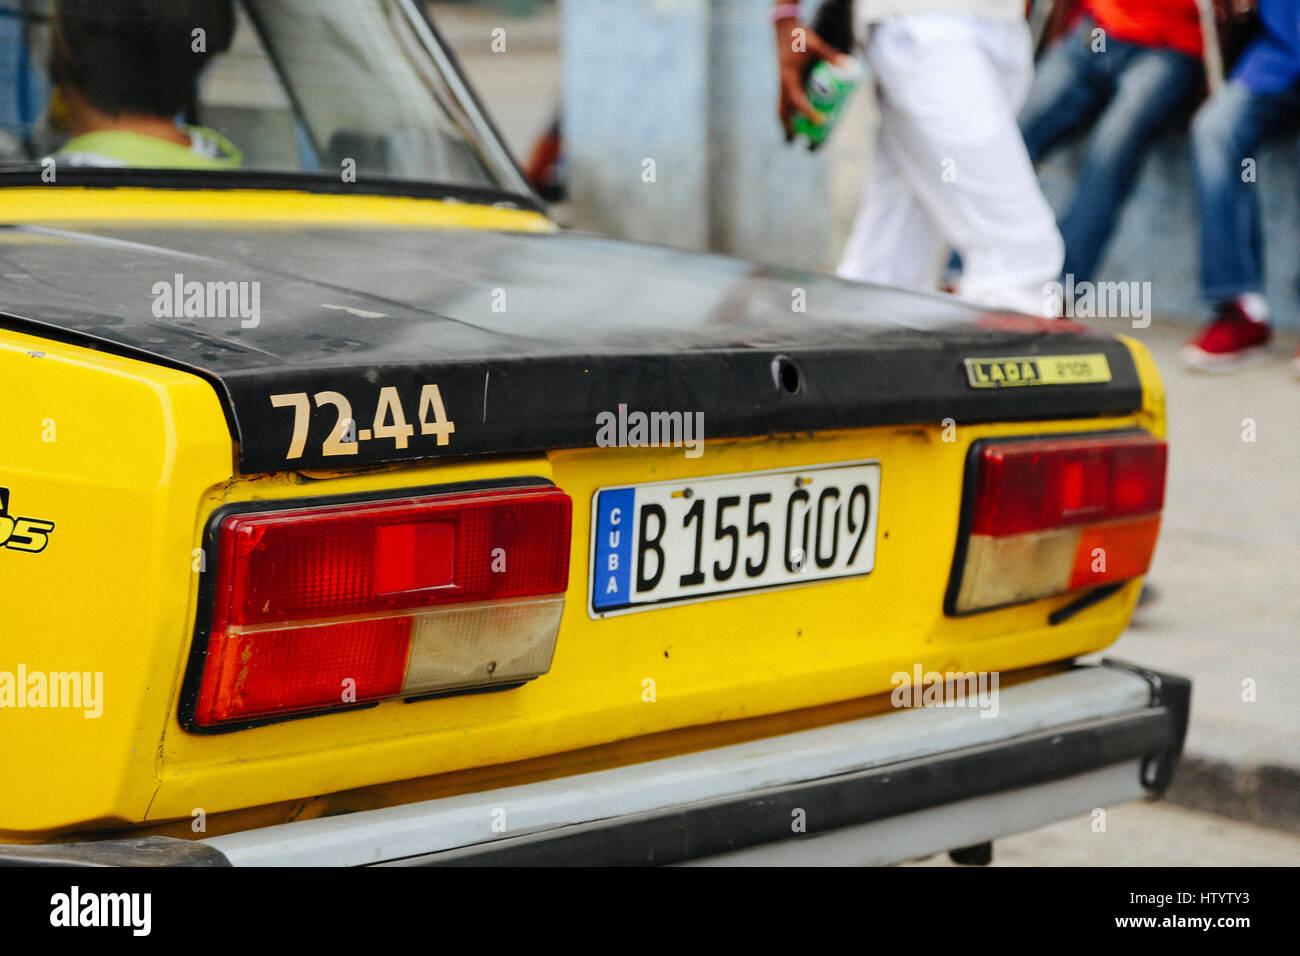 Die Rückseite eines amtlichen gelben Lada Taxi in Havanna, Kuba Stockfoto